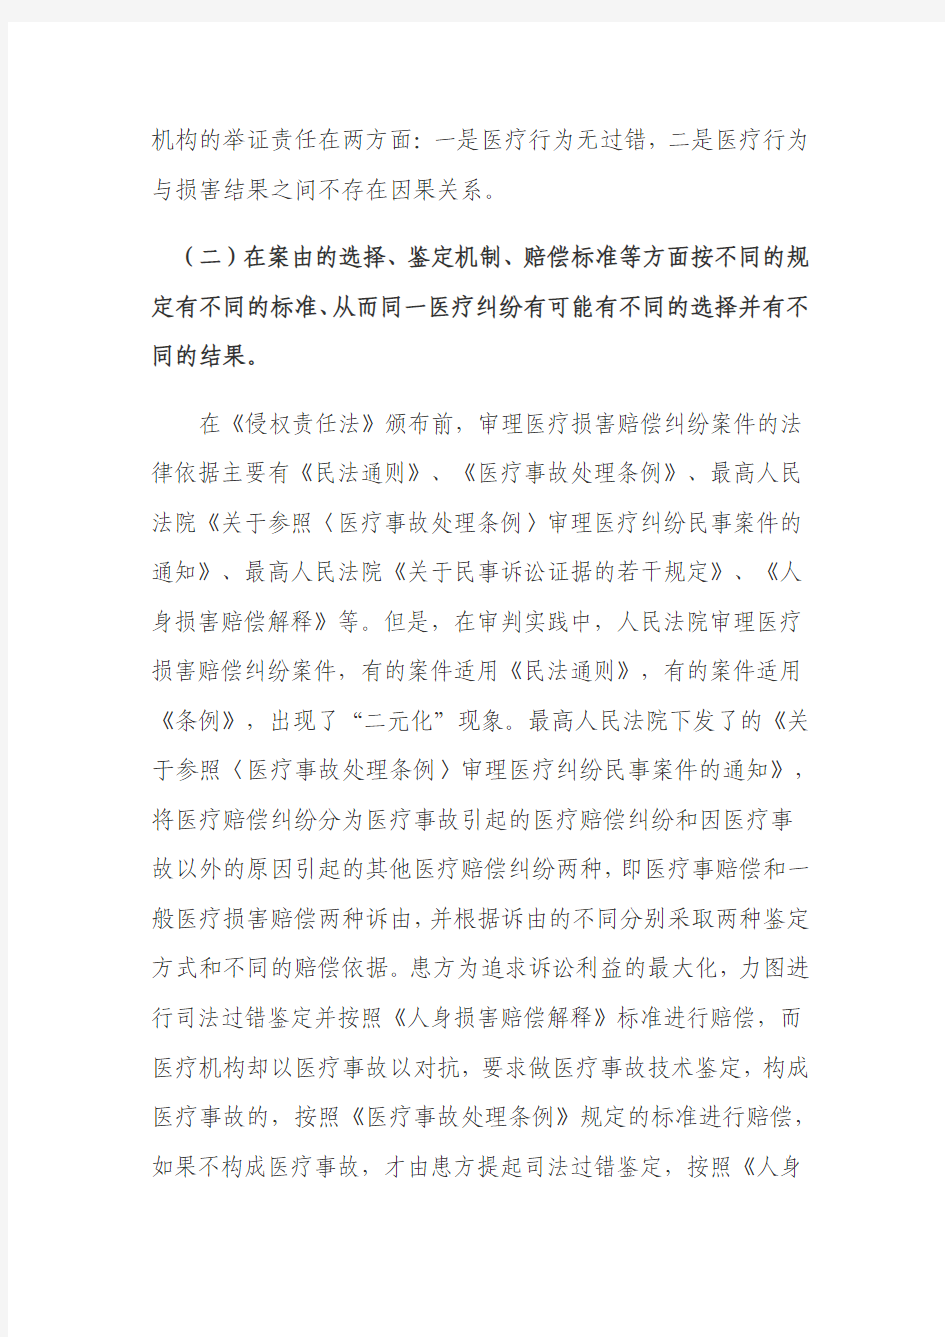 (11)《中华人民共和国侵权责任法》实施后医疗纠纷